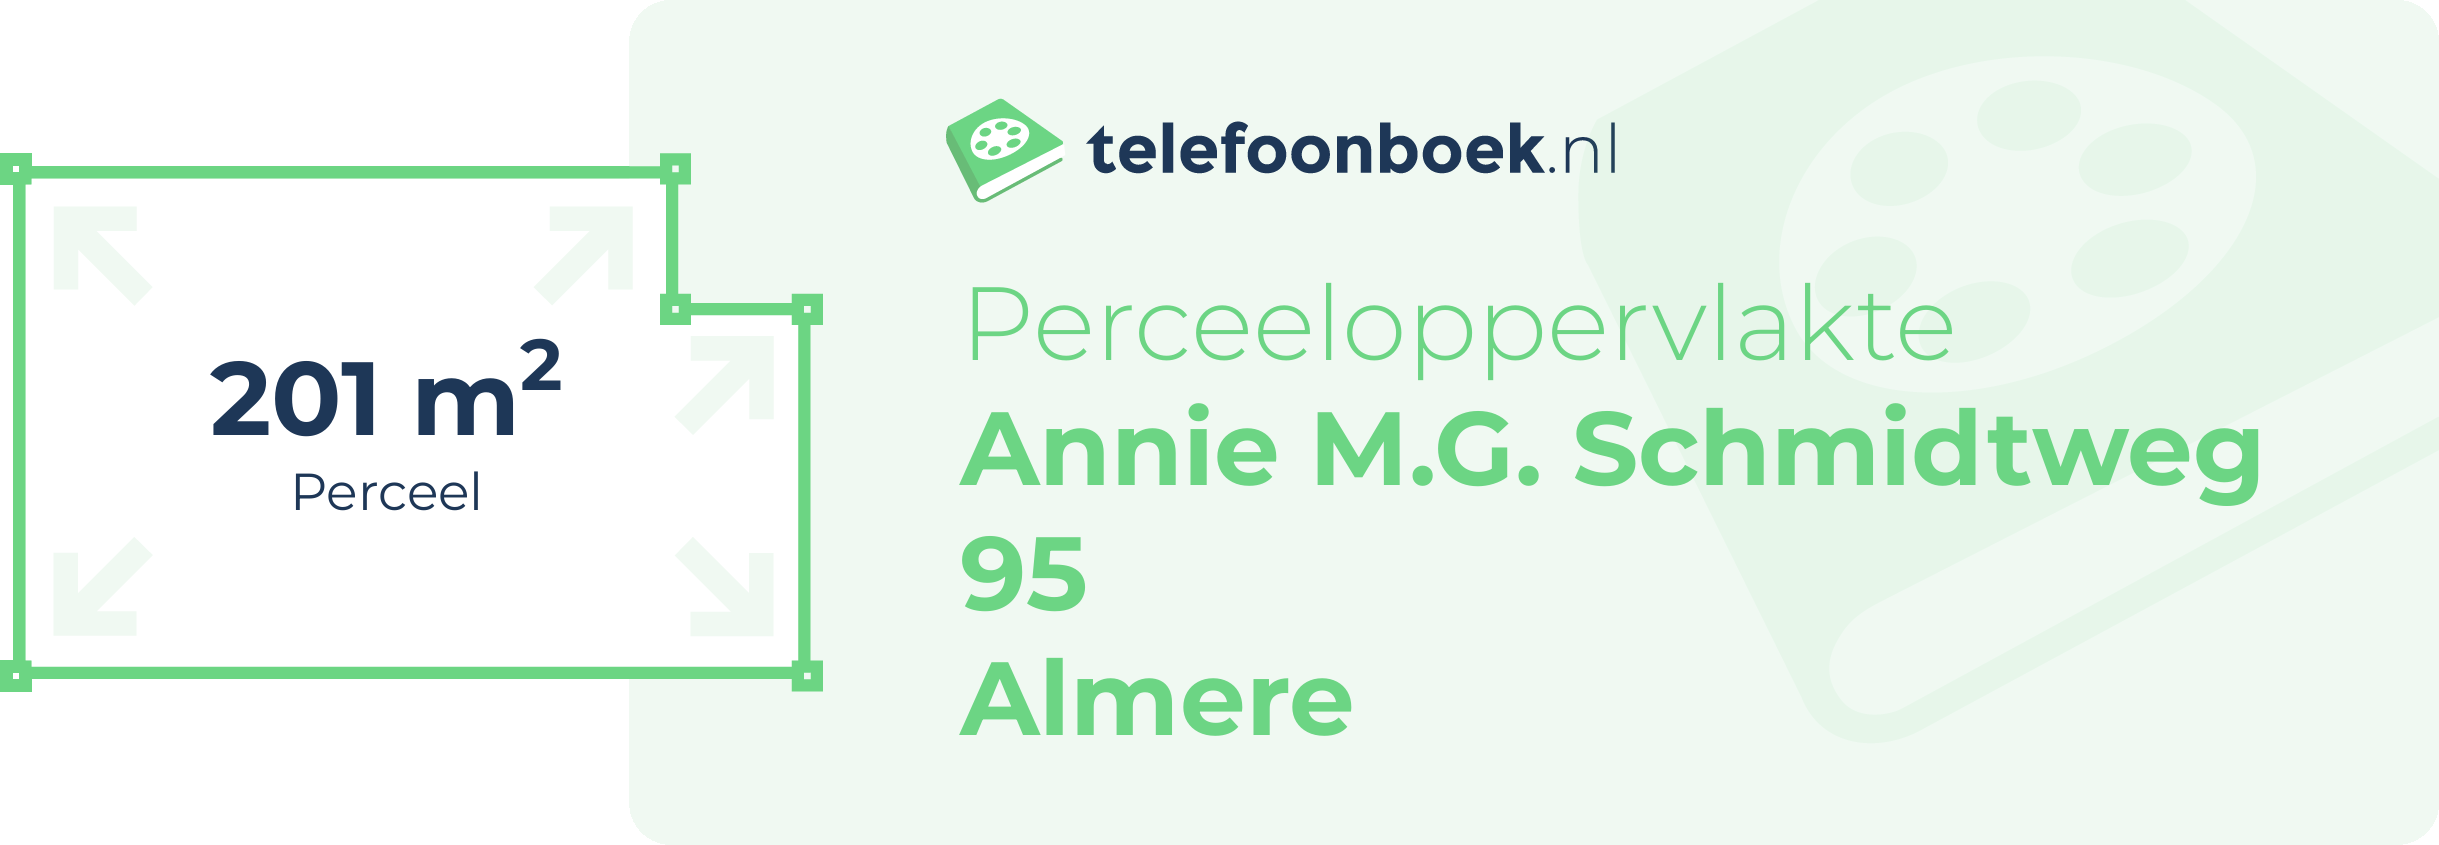 Perceeloppervlakte Annie M.G. Schmidtweg 95 Almere